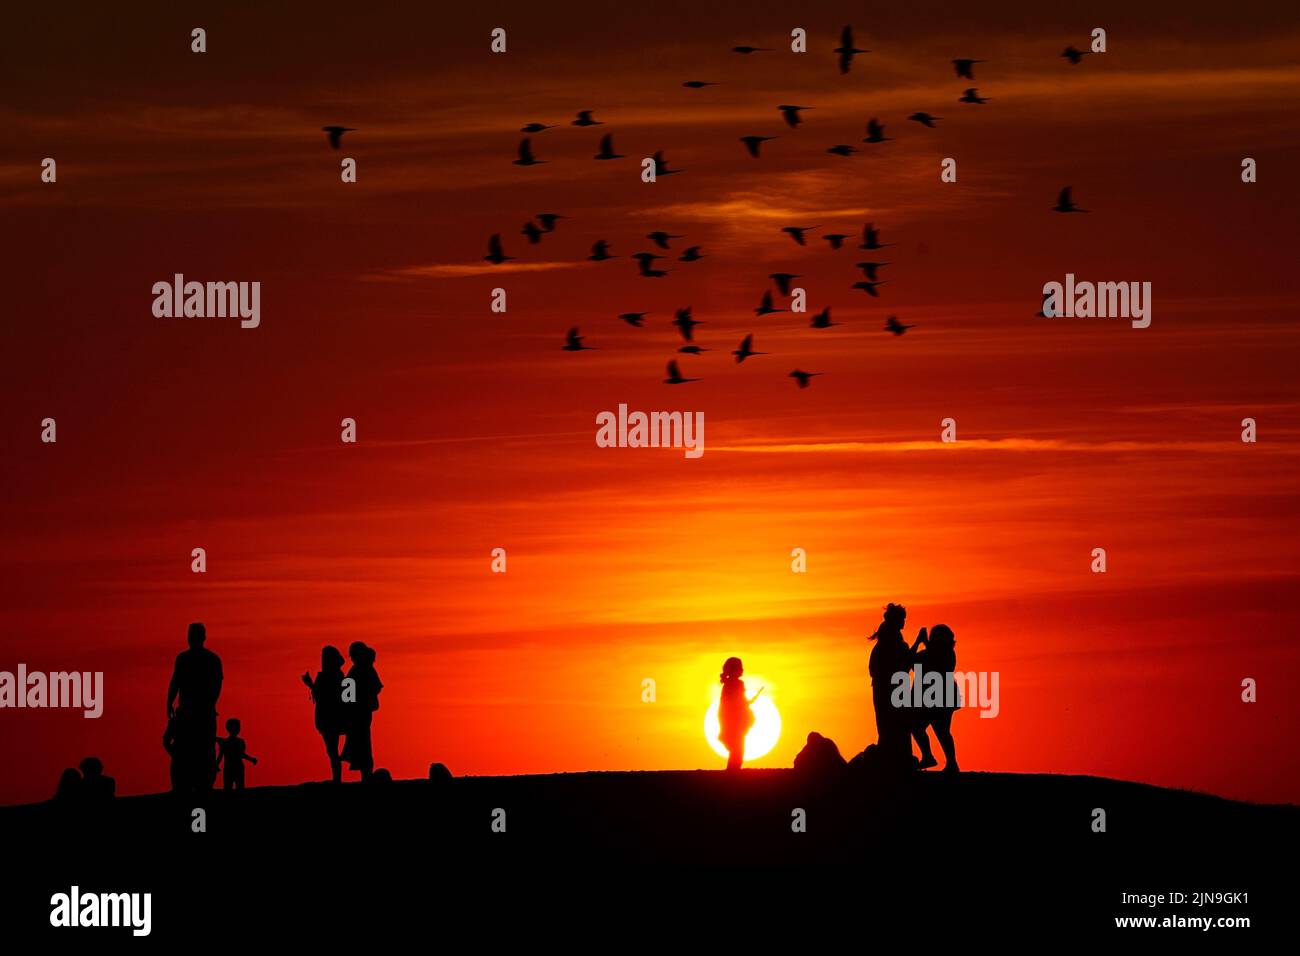 Gruppen von Menschen beobachten den Sonnenuntergang von einem Hügel in Ealing, West-London, während ein Sommer voller Rohrleitungsverbote und Feuerwarnungen anhält, wobei in weiten Teilen des Landes ein Wärmestandalarm ausgelöst wird. Bilddatum: Dienstag, 9. August 2022. Stockfoto